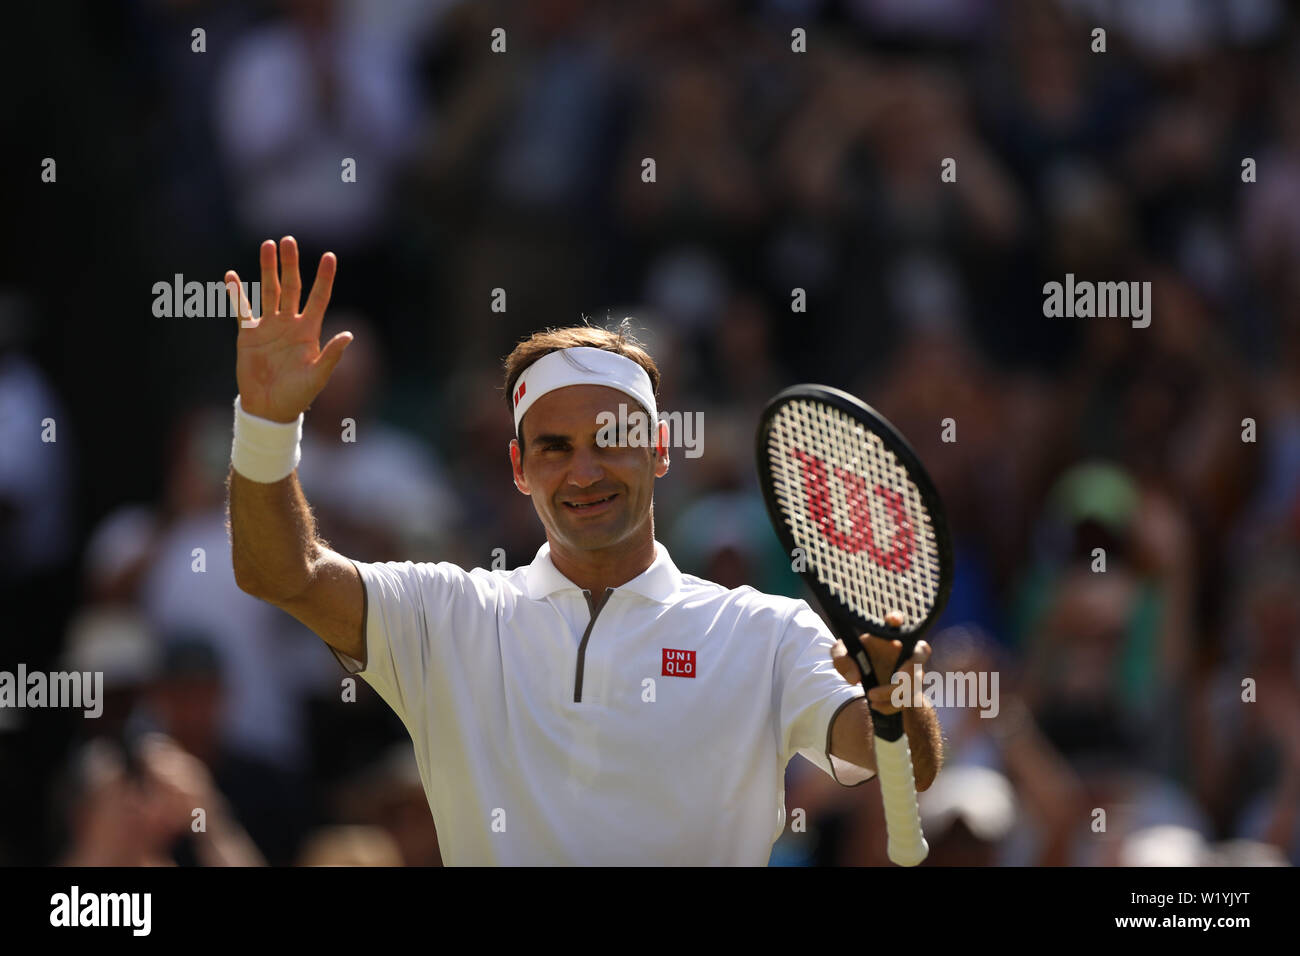 Londres, ANGLETERRE - 04 juillet : Roger Federer de la Suisse en action durant son masculin deuxième tour sur pendant quatre jours des championnats - Wimbledon 2019 au All England Lawn Tennis et croquet Club le 04 juillet 2019, à Londres, en Angleterre. Banque D'Images